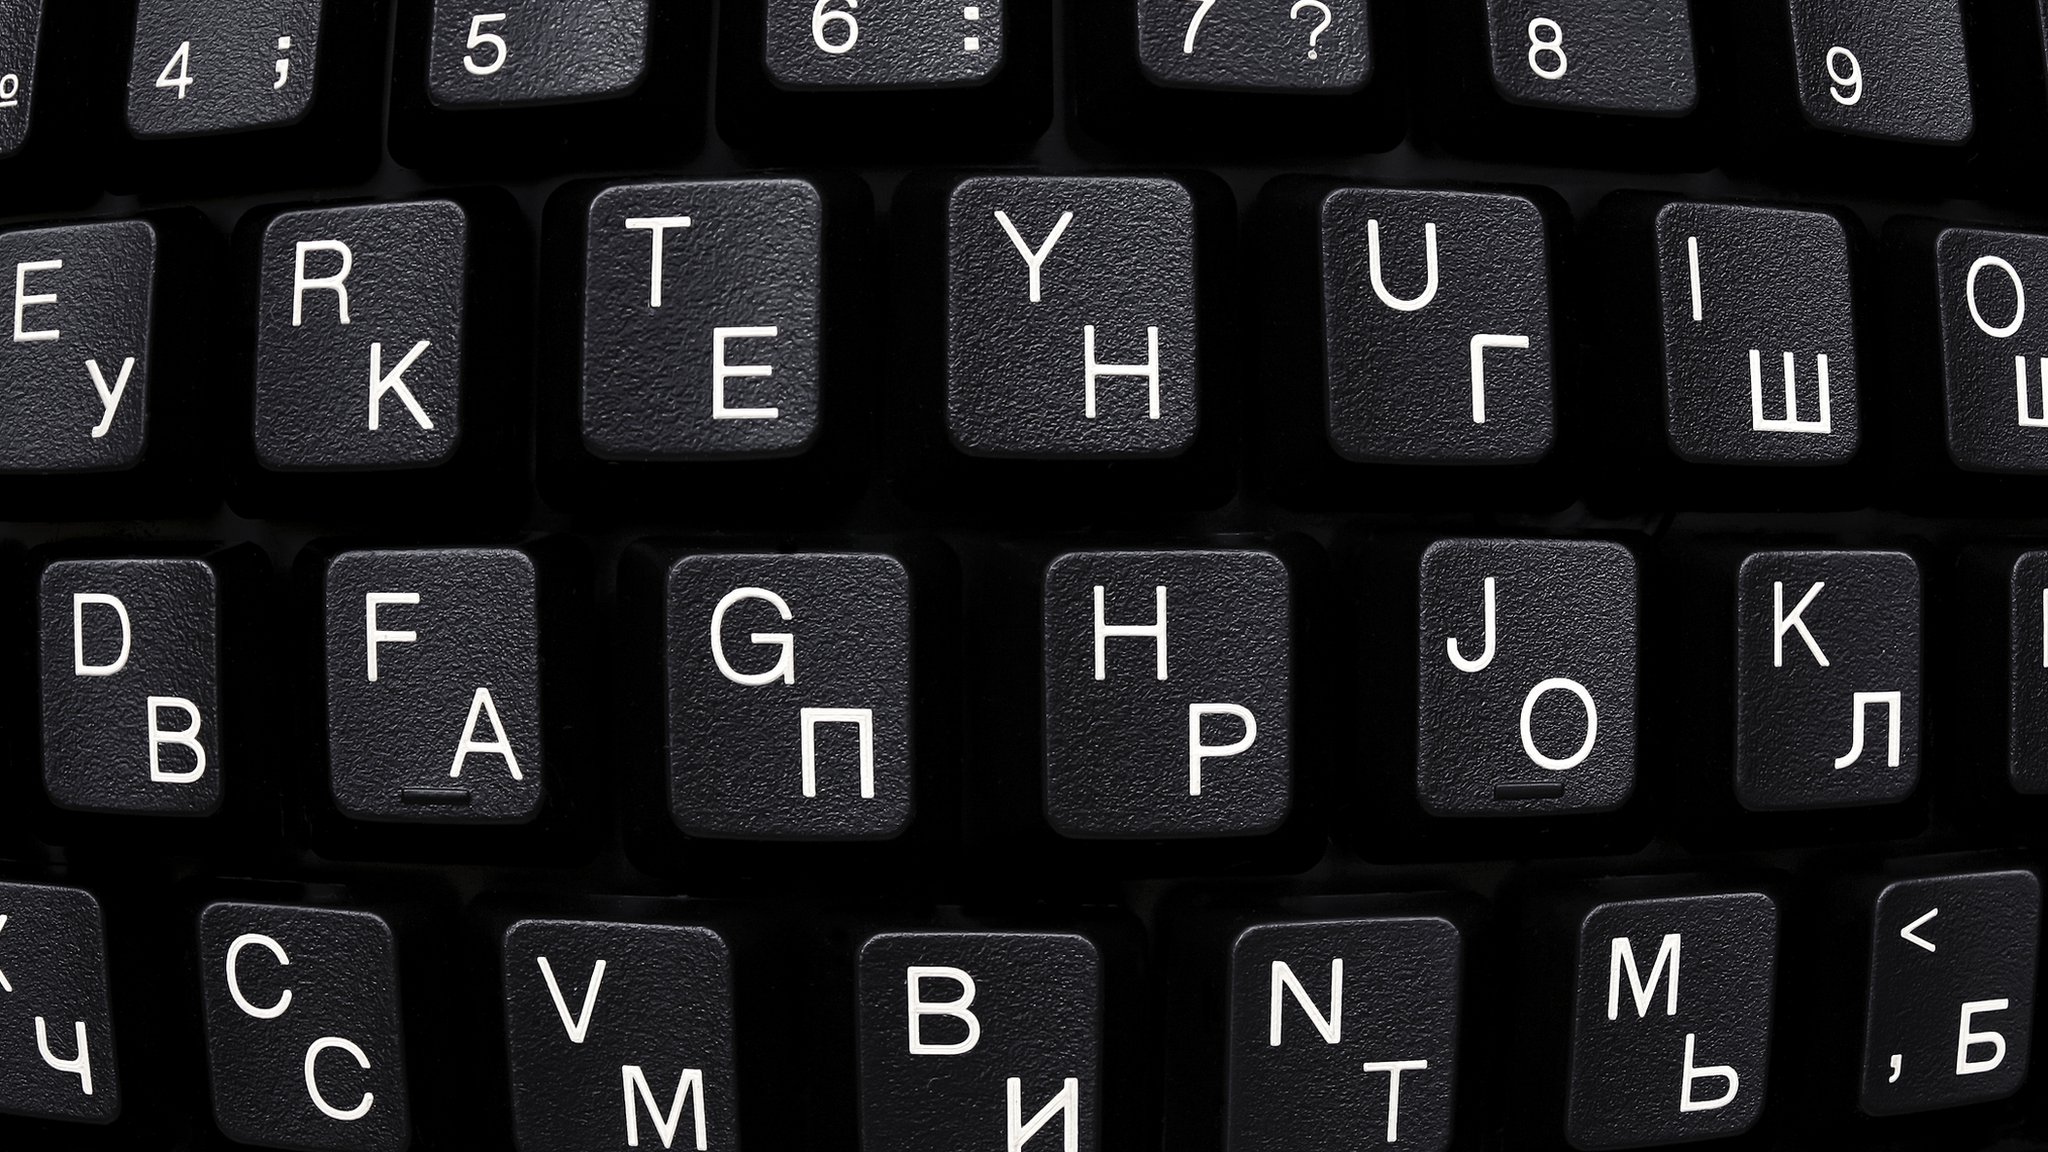 Русификация клавиатуры гравировкой 😎 15 мин + от Р + Китай-город